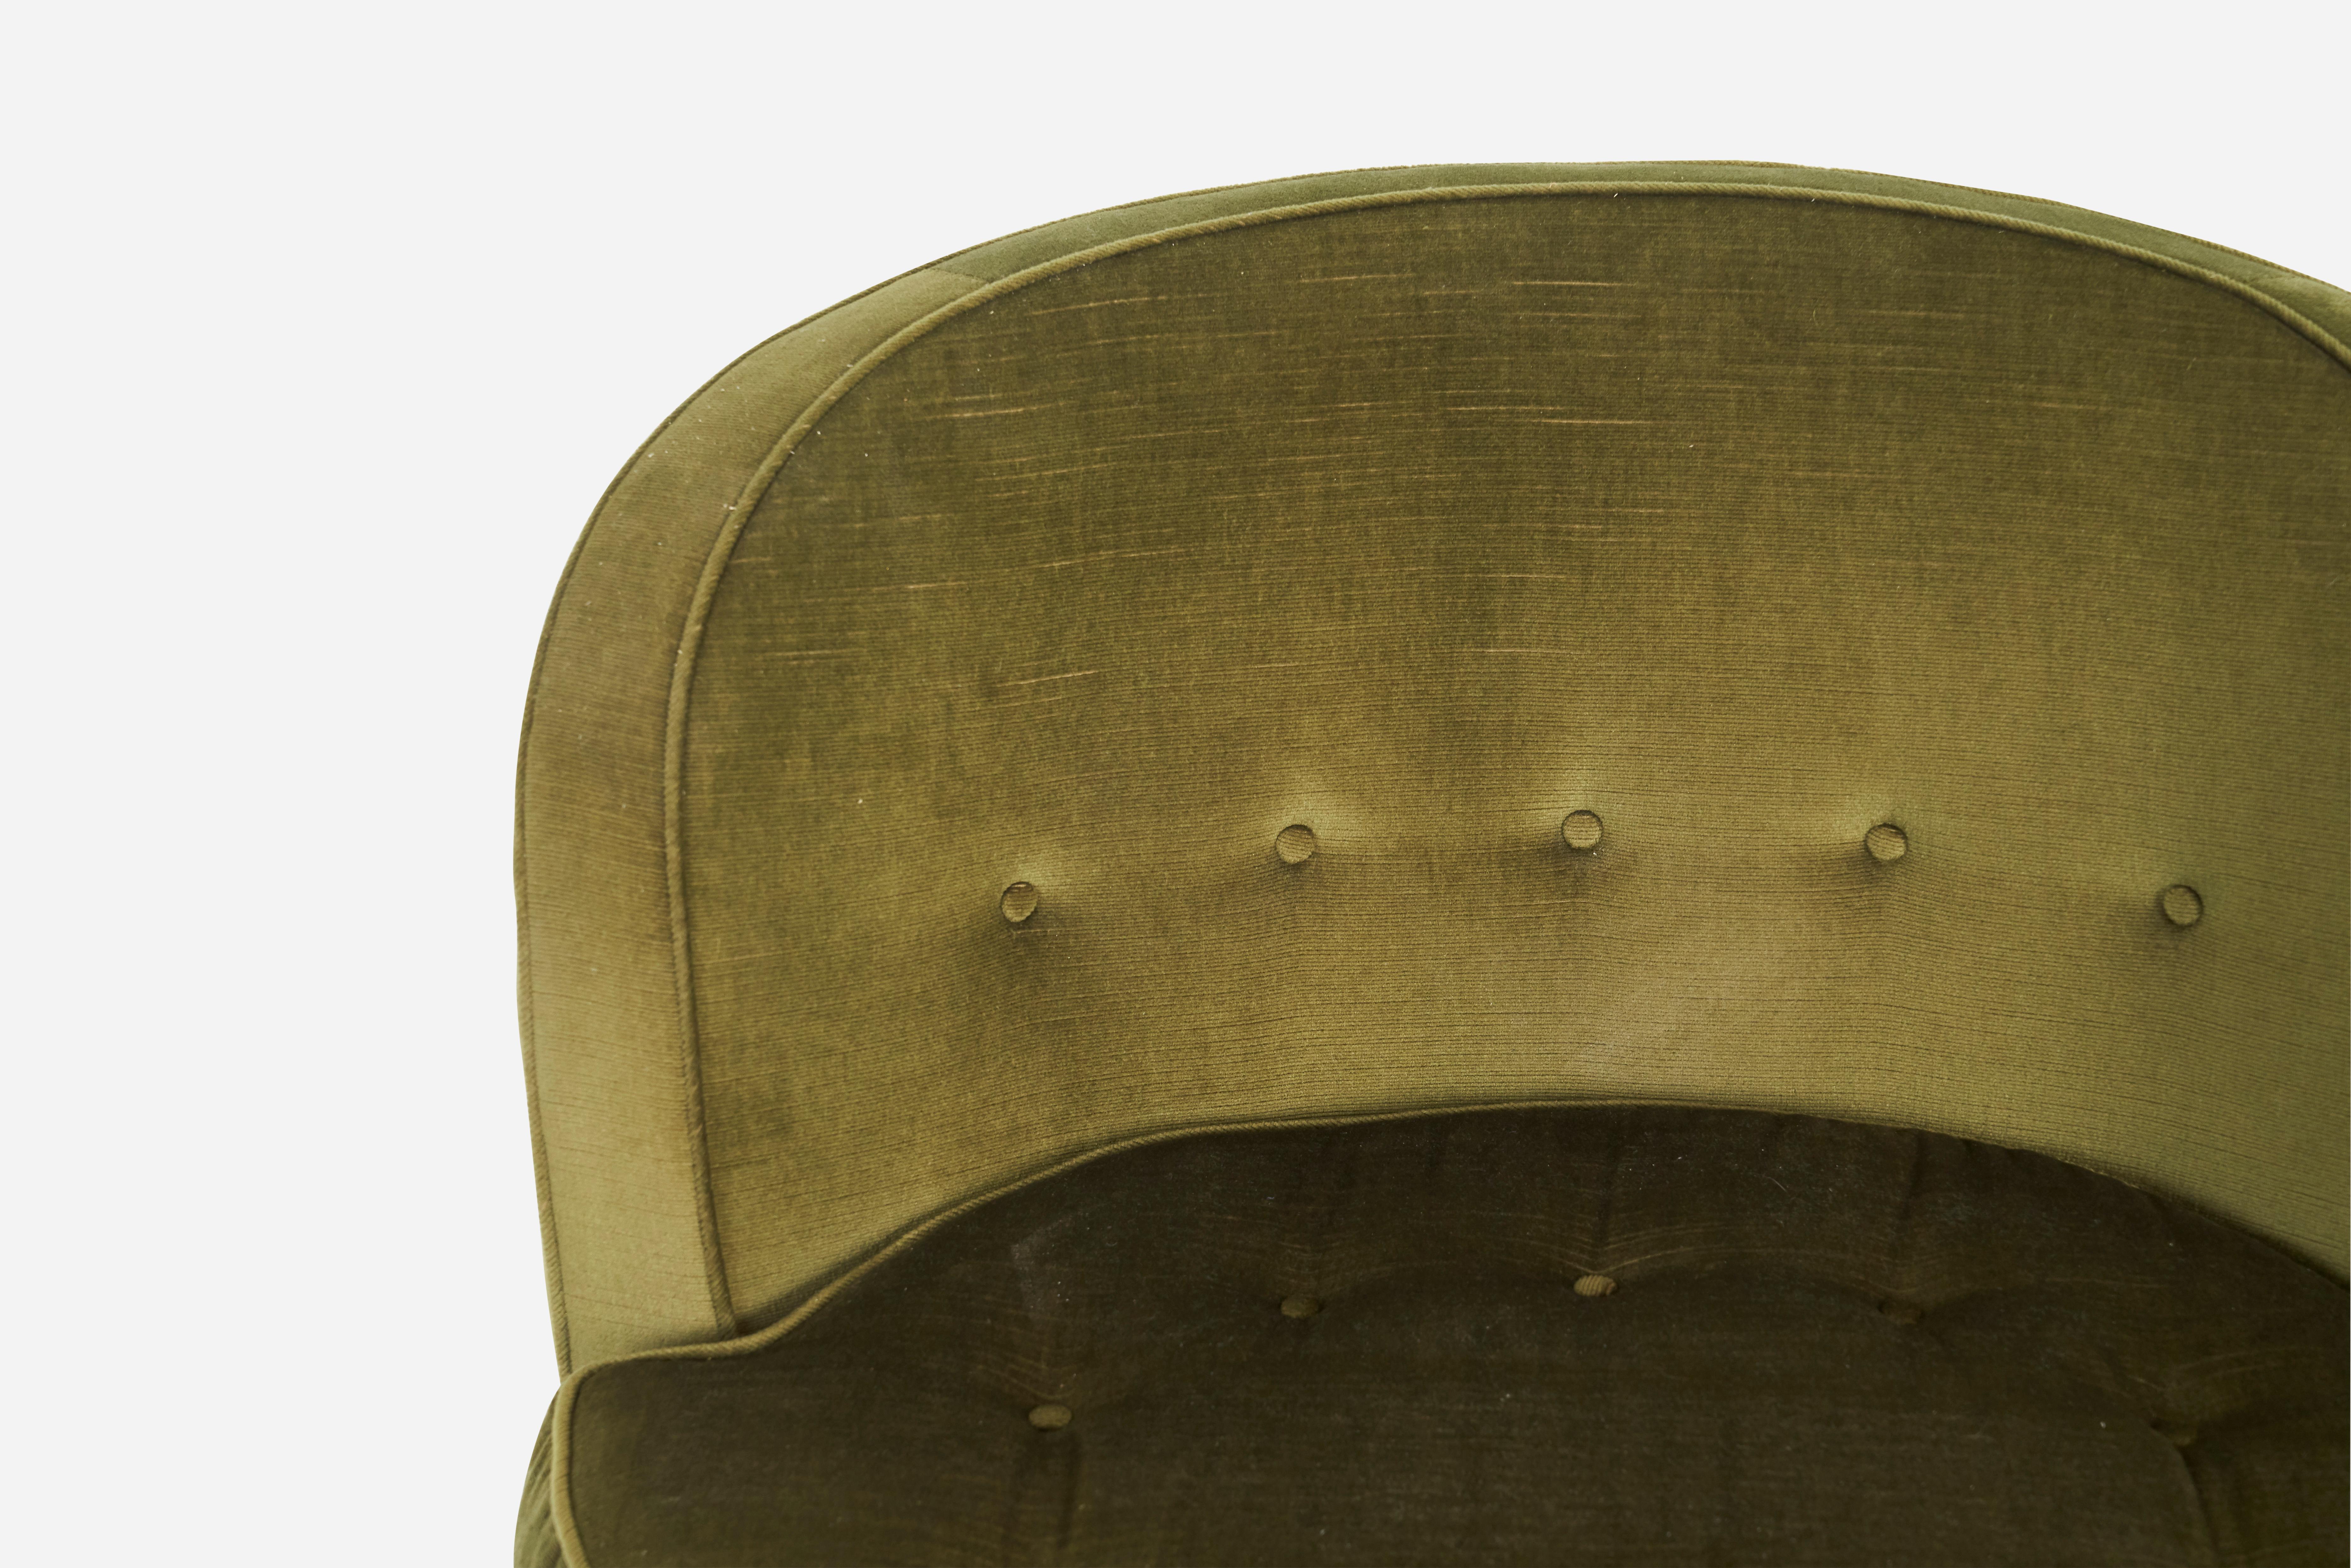 Swivel chair designed by Edward Wormley for Dunbar. Walnut swivel base with original fabric.